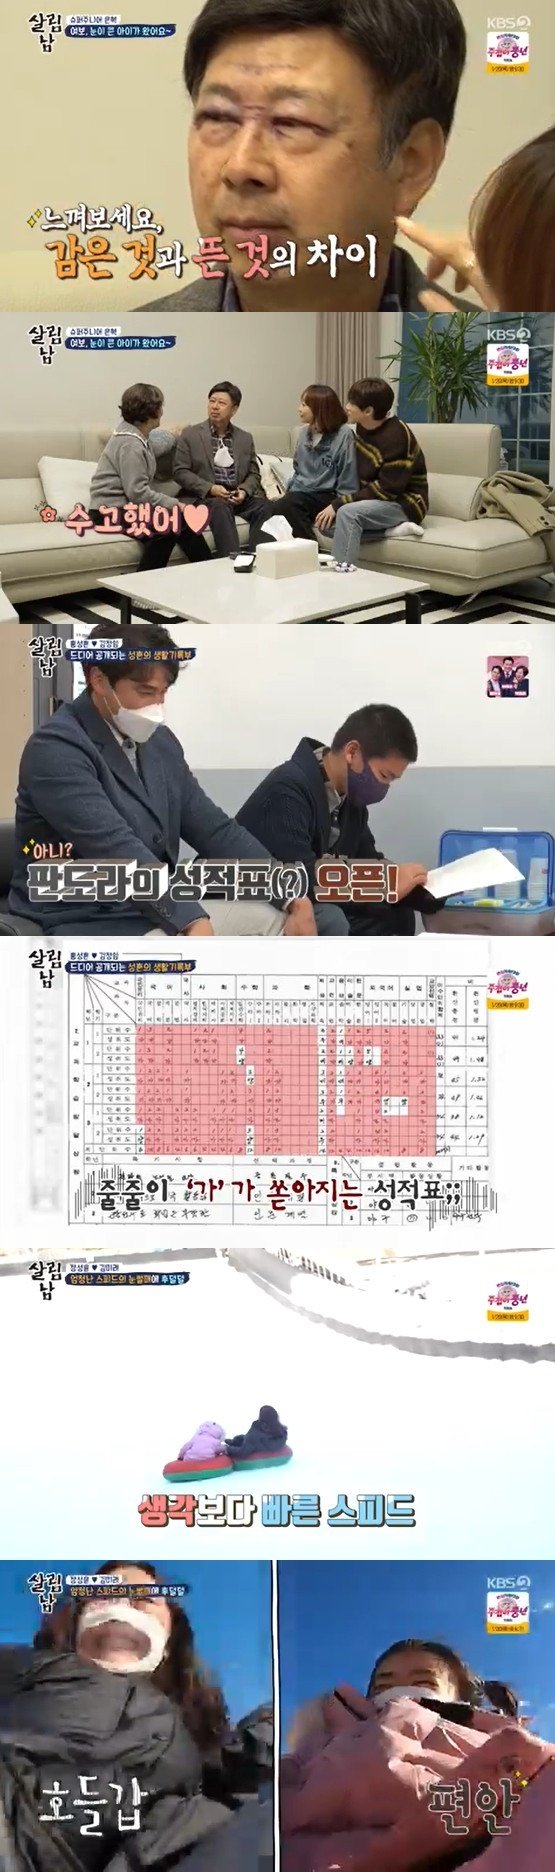 '살림남2', 은혁 부친 쌍안검 수술 성공→홍성흔 고교 성적표 공개(종합)